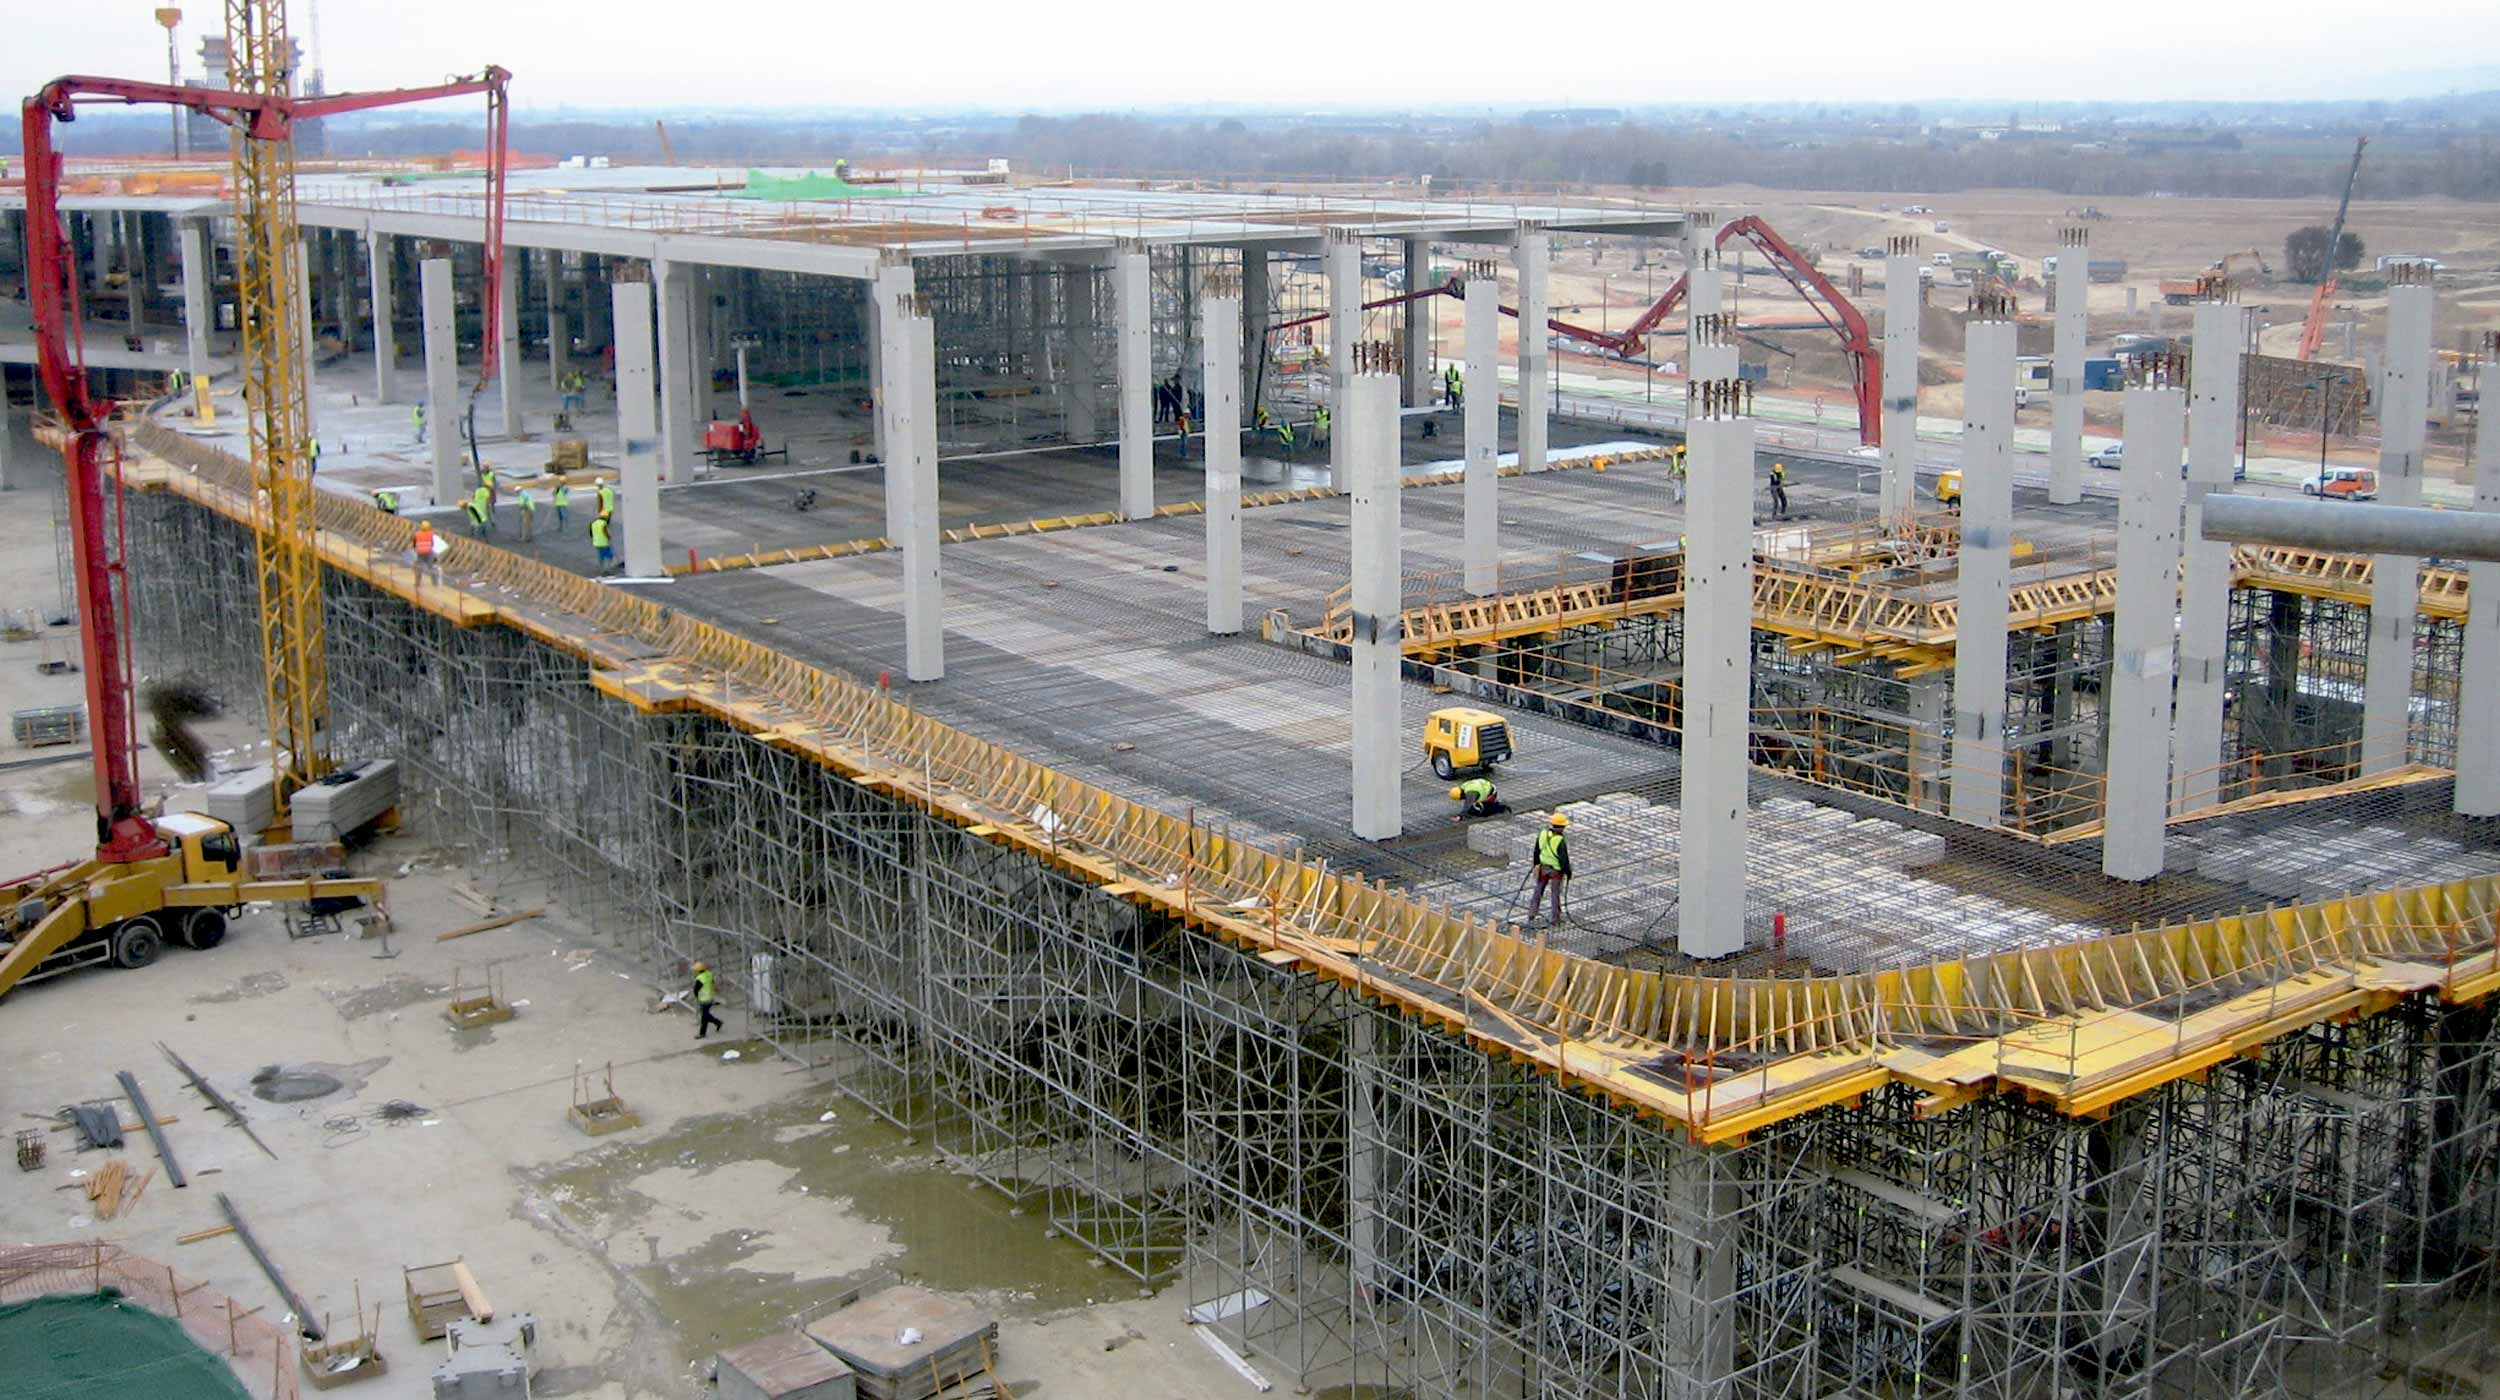 ULMA Construccion uczestniczyła w budowie 15 obiektów na terenie targów. Najbardziej wymagające to Wieża Wodna, Pawilon Aragoński, Pawilon Hiszpański.